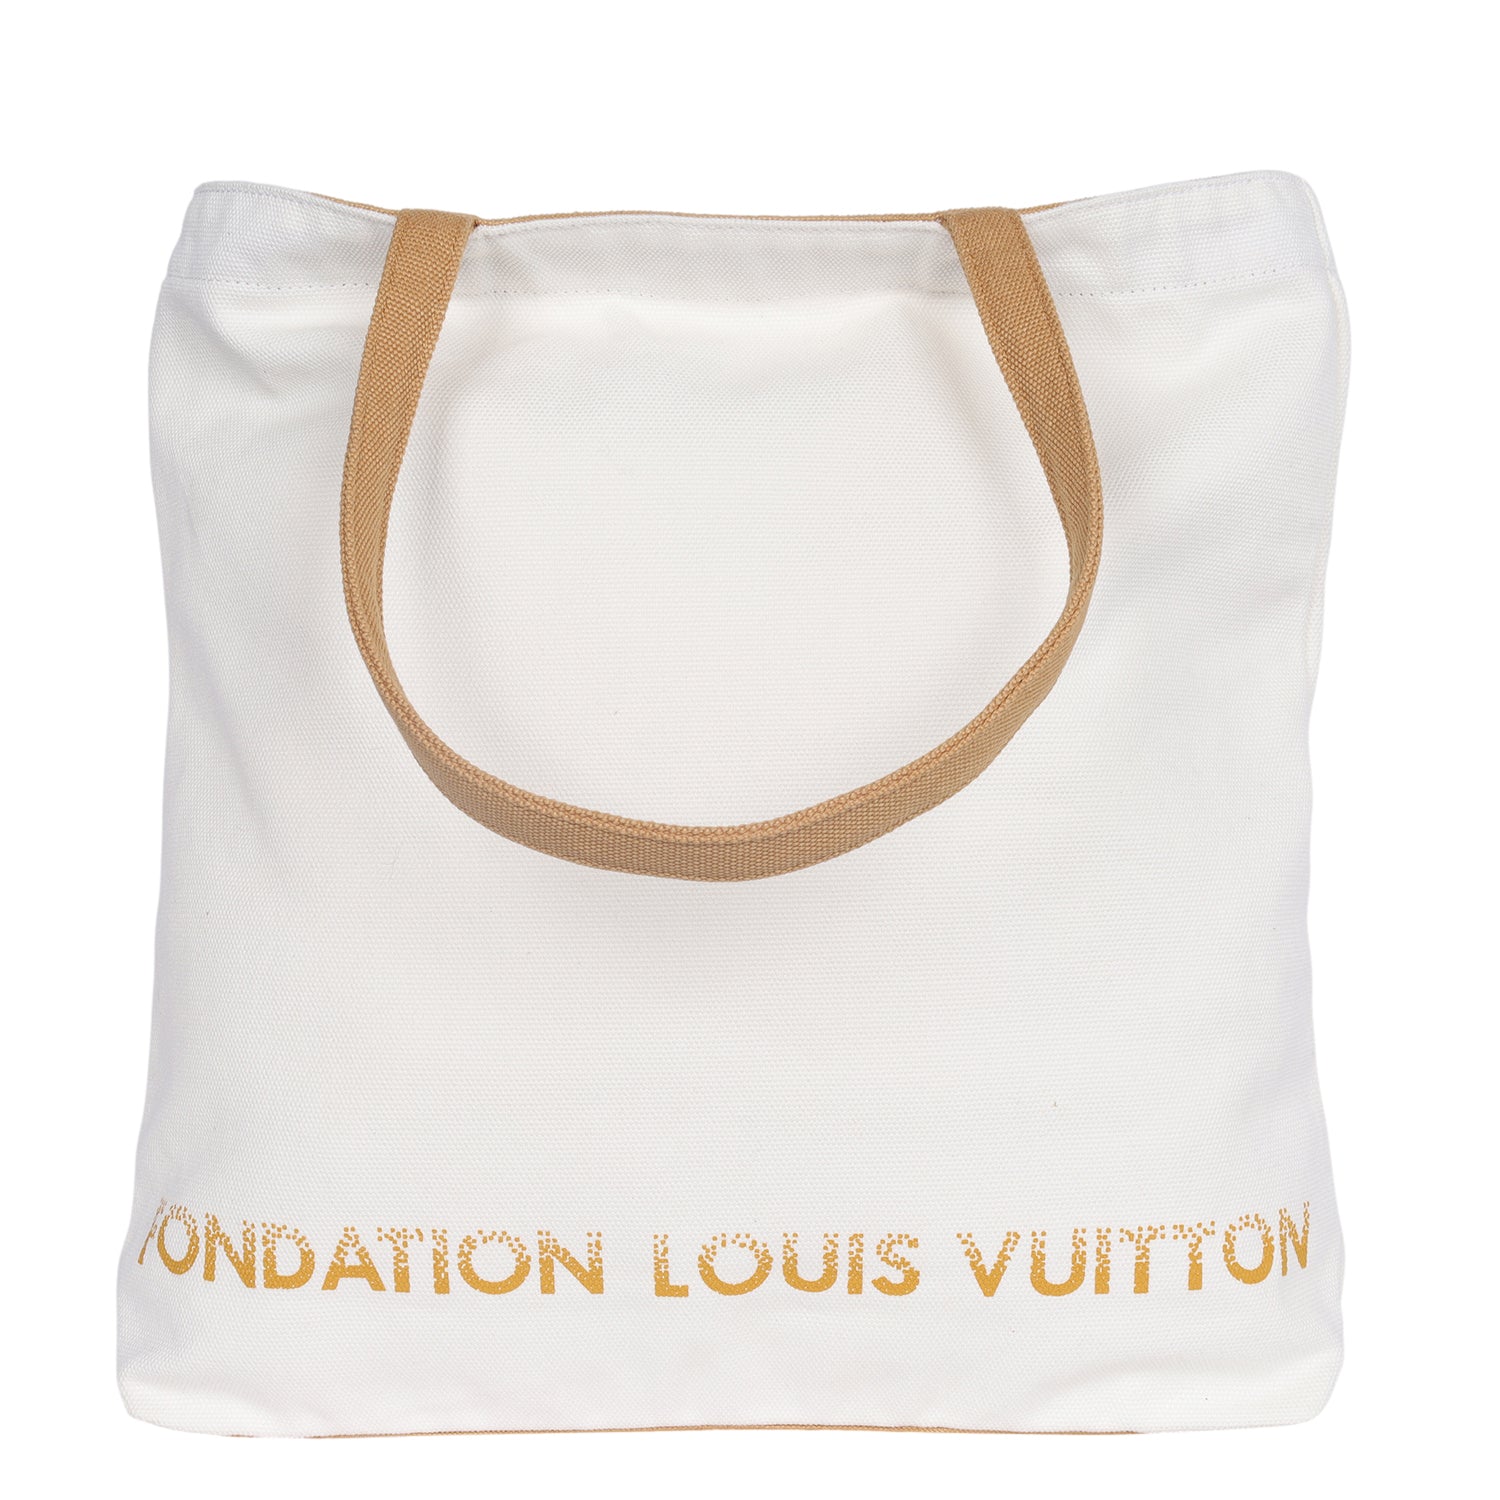 Authentic Louis Vuitton Fondation Exclusive Shoulder Tote Bag